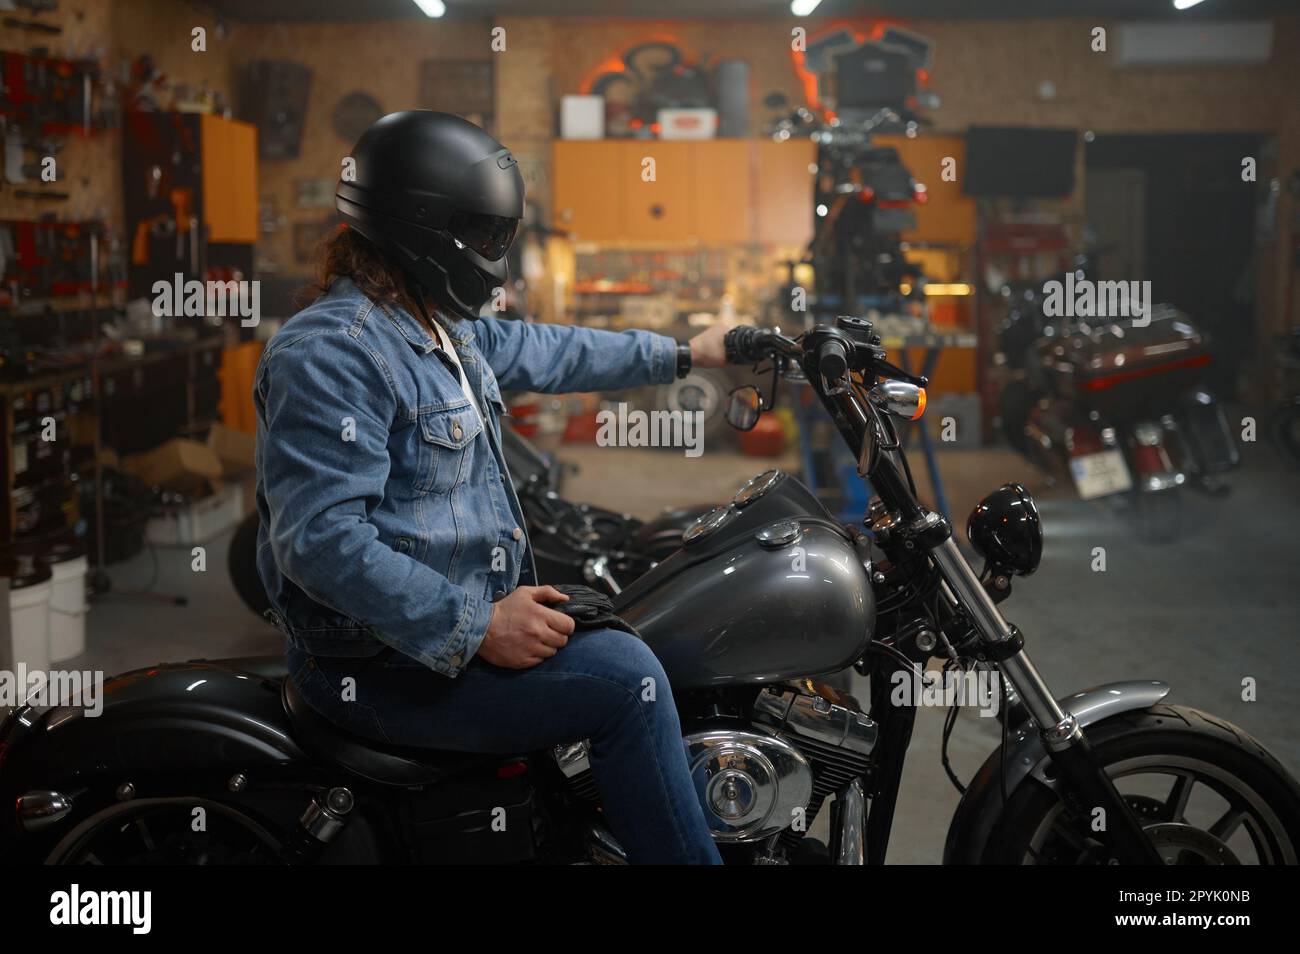 Motard dans un casque de protection assis sur une moto qui teste un nouveau véhicule Banque D'Images